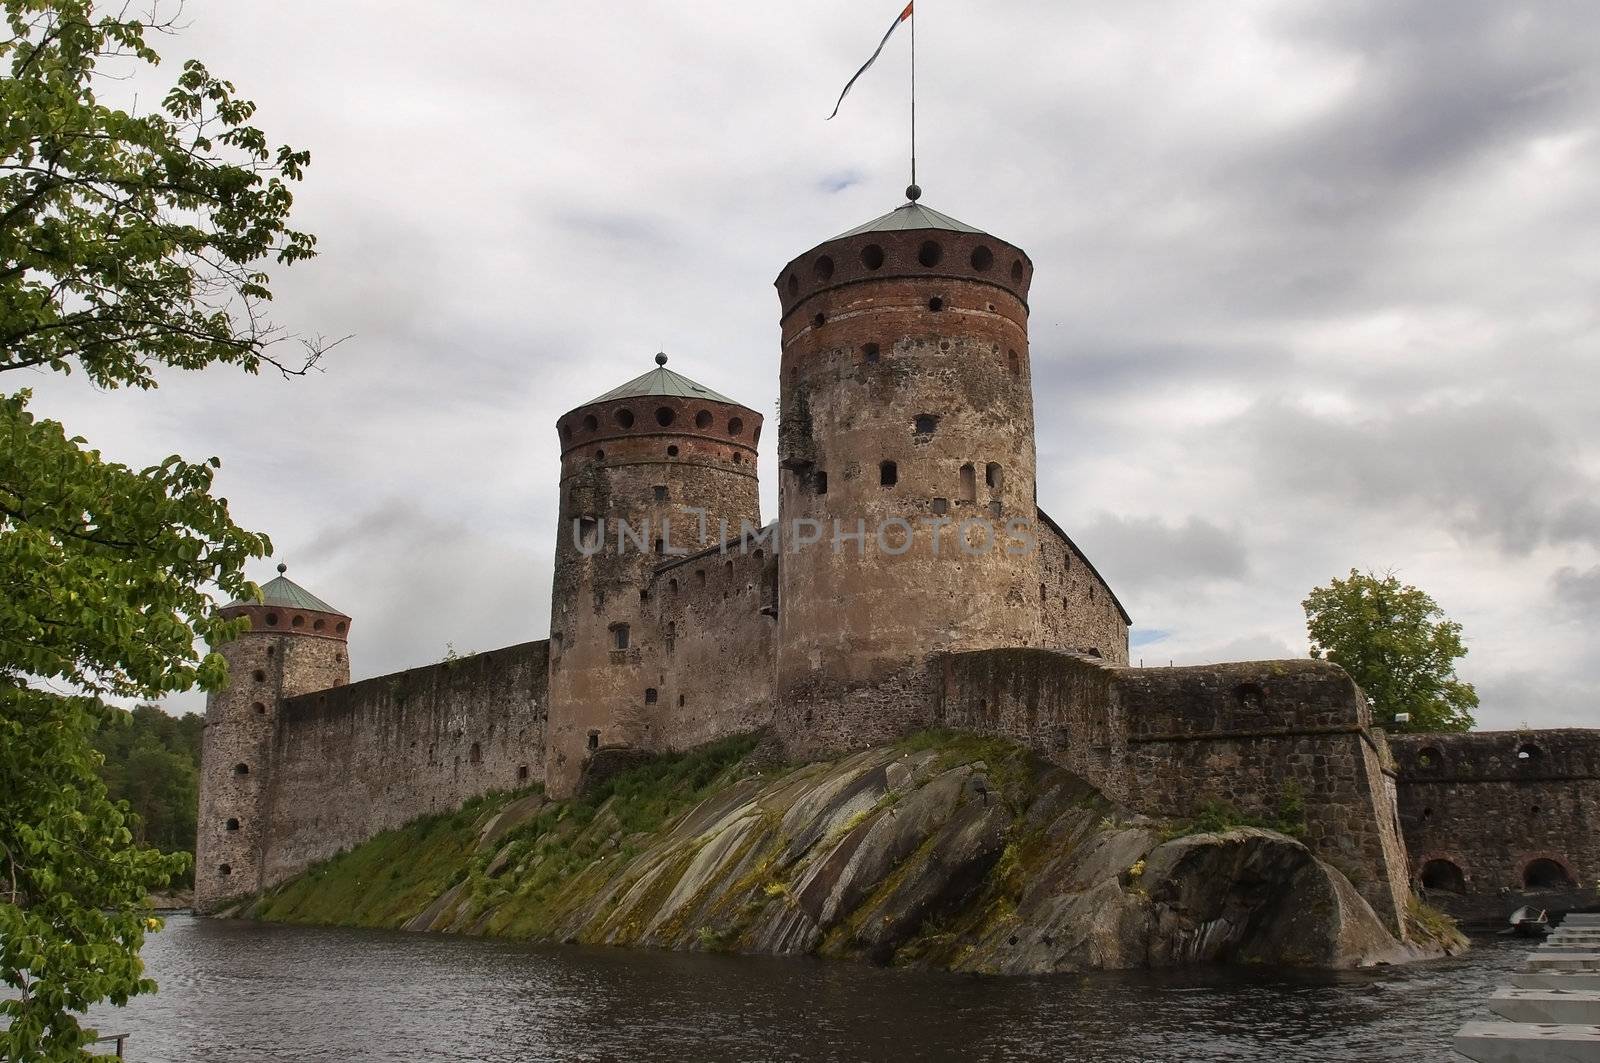 Finland, the fortress town of Savonlinna in Olavinlinna